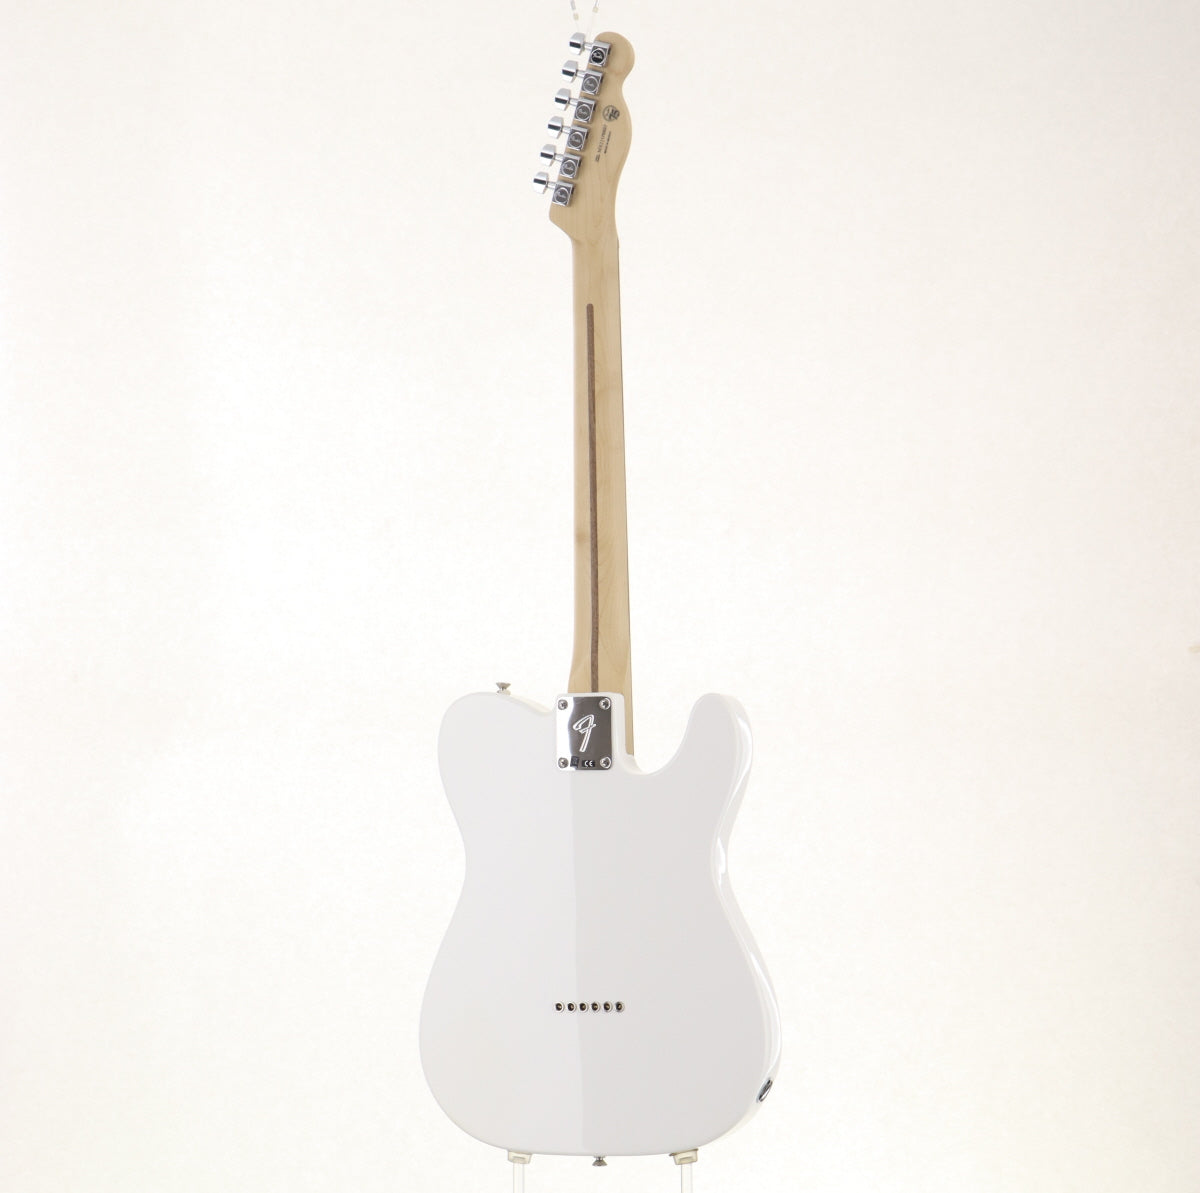 [SN MX21176887] USED Fender / Player Series Telecaster Left-handed Polar White Pau Ferro Fingerboard [09]